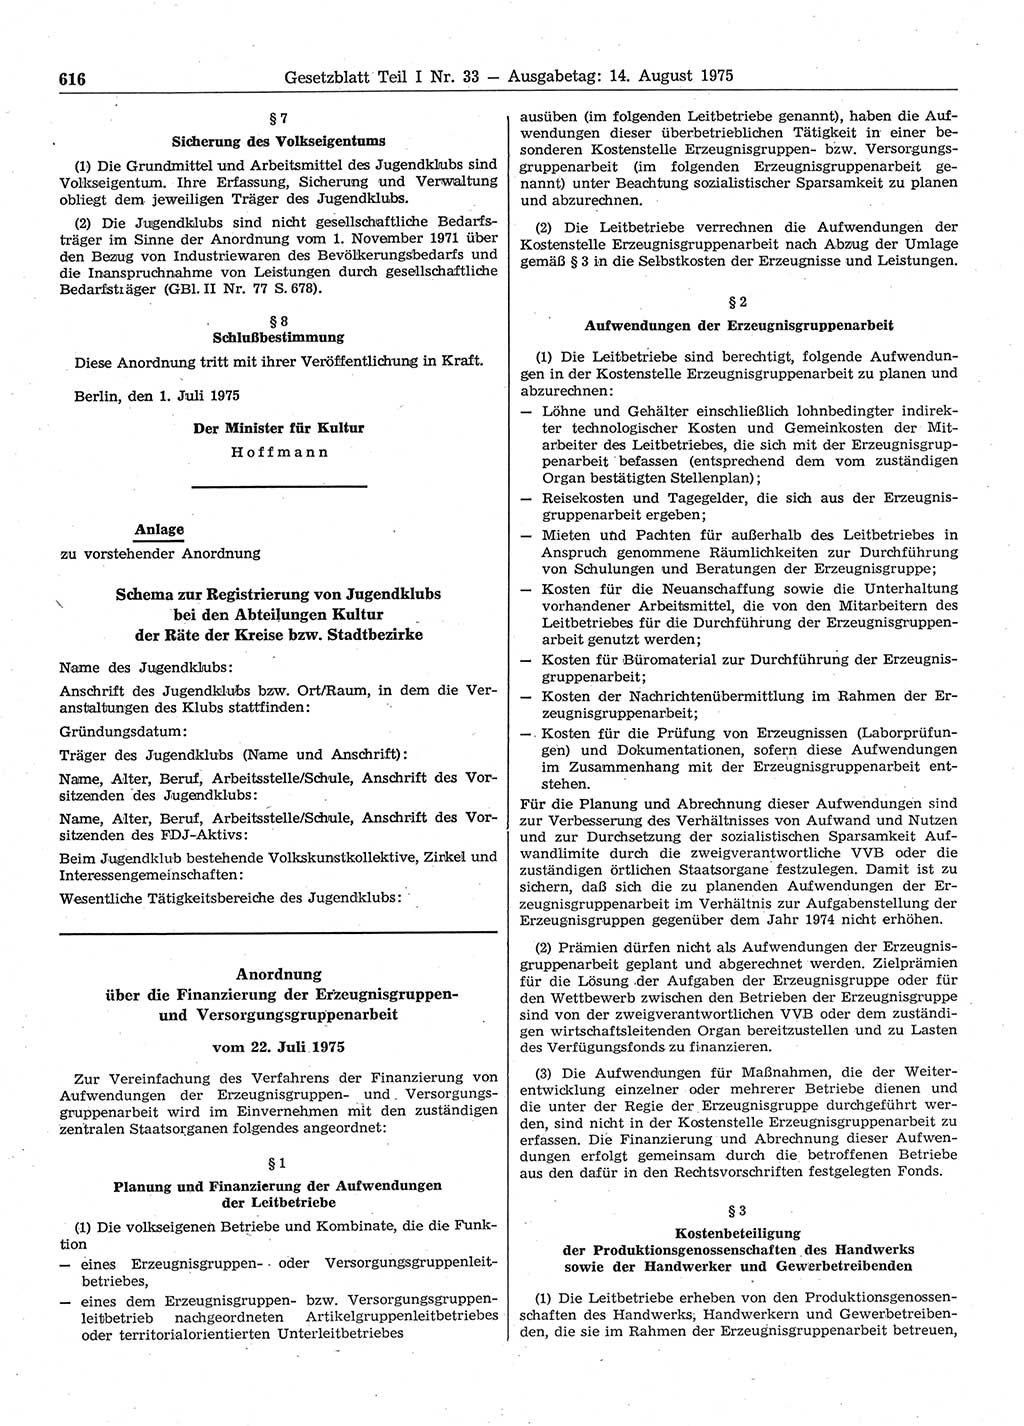 Gesetzblatt (GBl.) der Deutschen Demokratischen Republik (DDR) Teil Ⅰ 1975, Seite 616 (GBl. DDR Ⅰ 1975, S. 616)